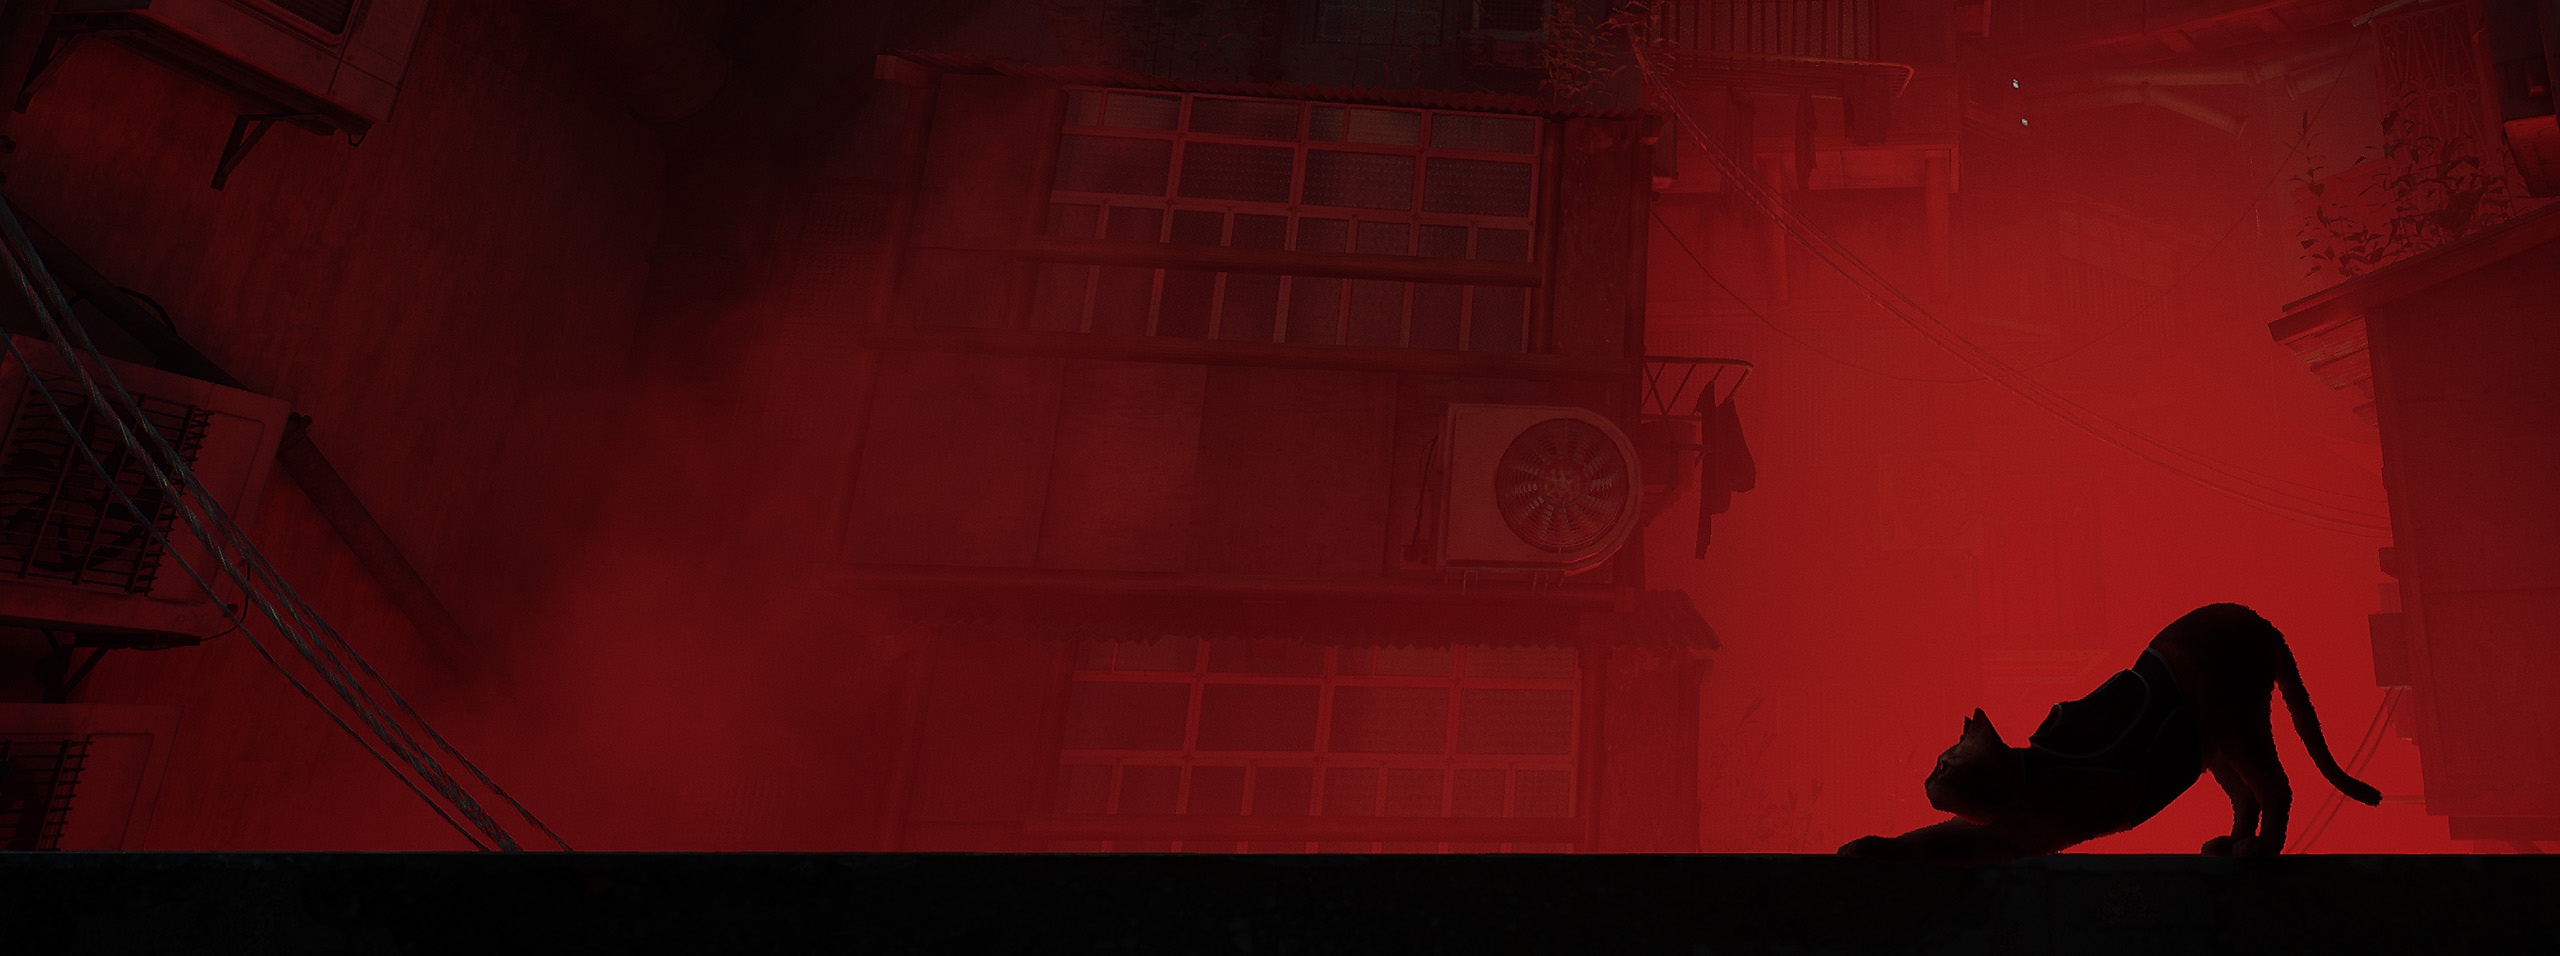 Alternatywna grafika promująca grę Stray przedstawiająca zarys profilu kota na tle czerwonej panoramy miasta.